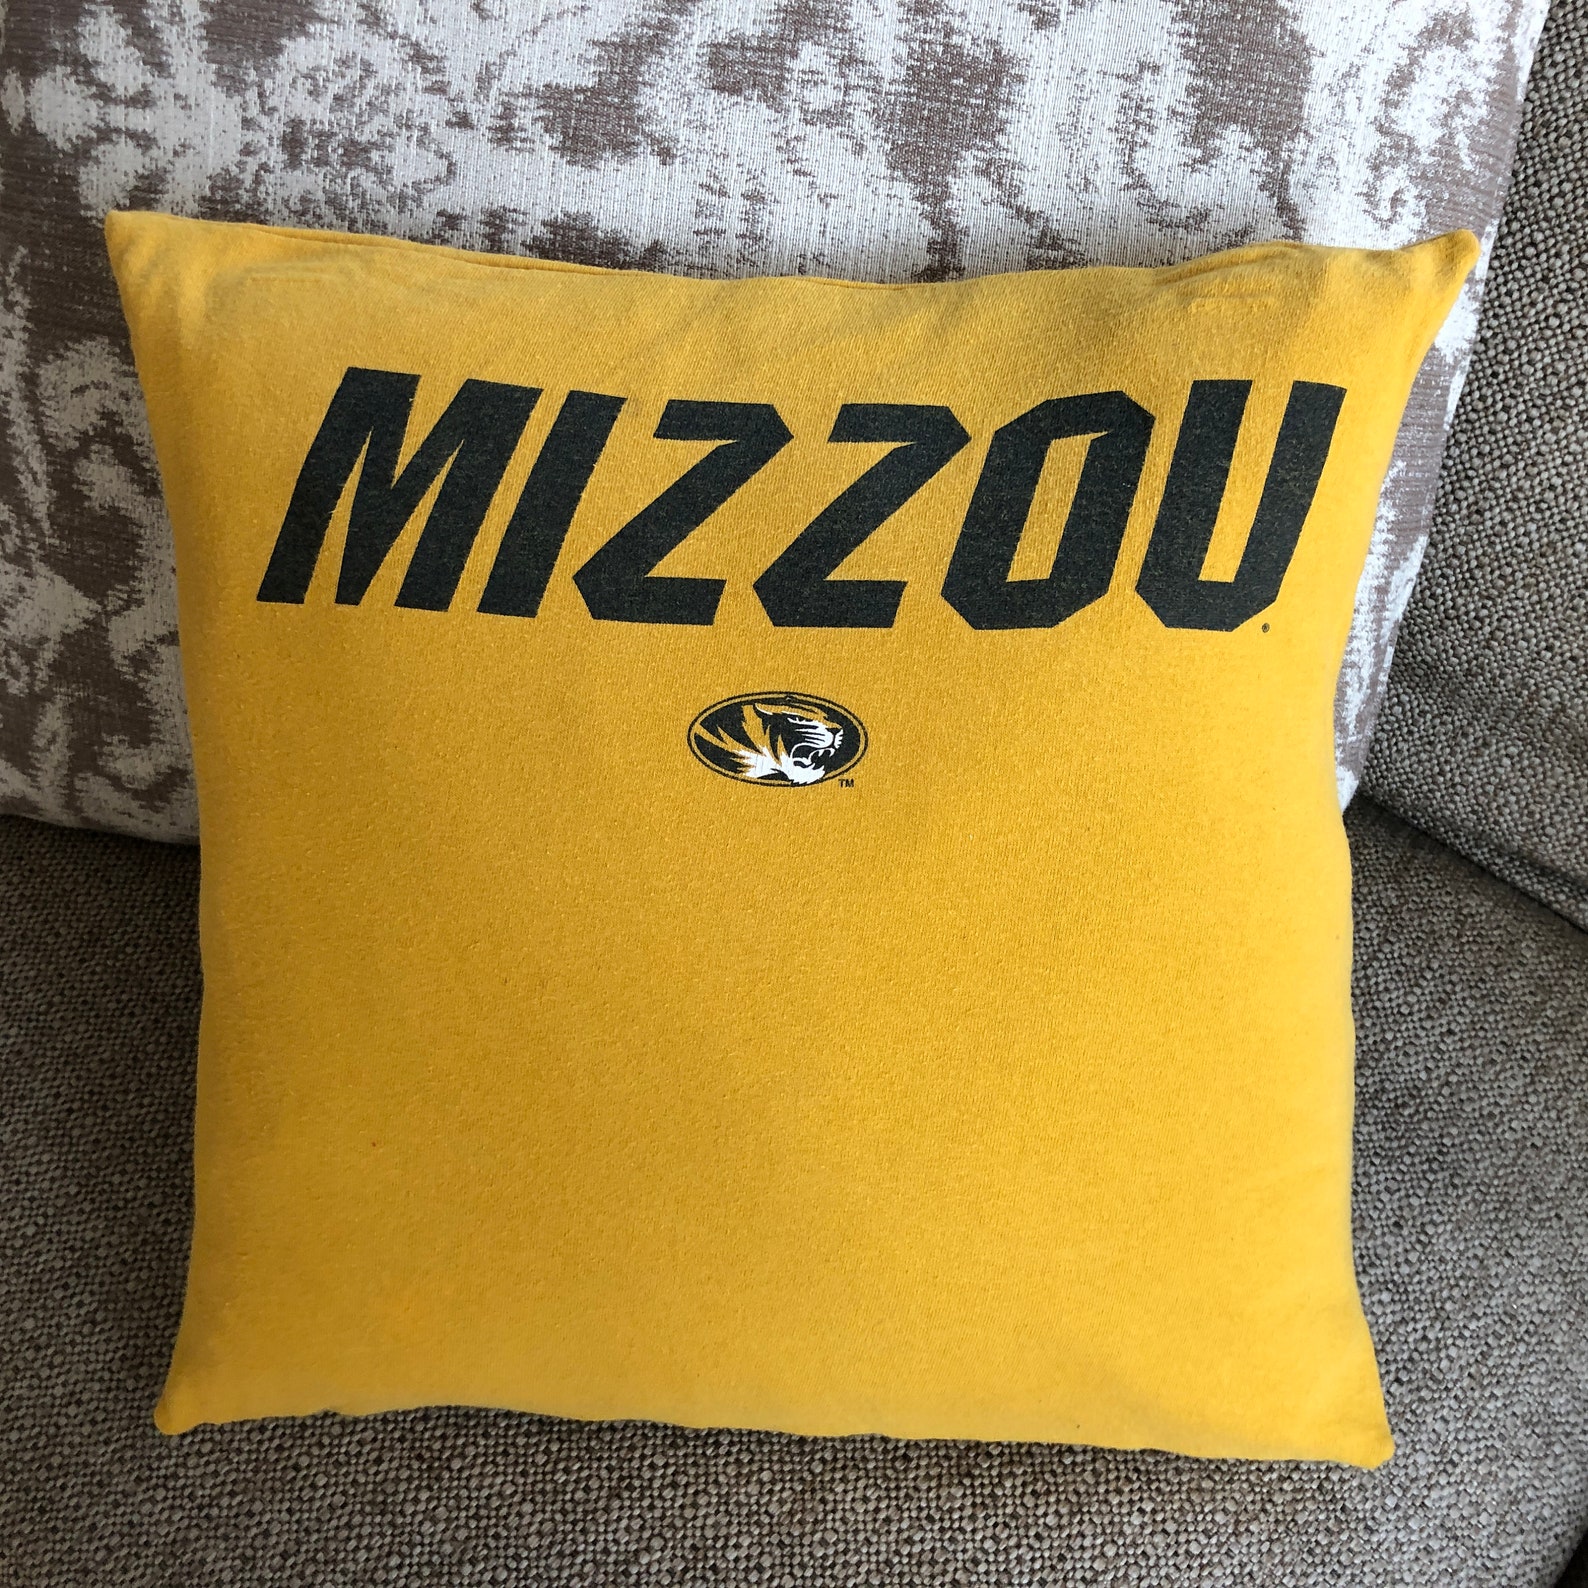 University Missouri Mizzou Pillow Cover vintage t shirt throw | Etsy